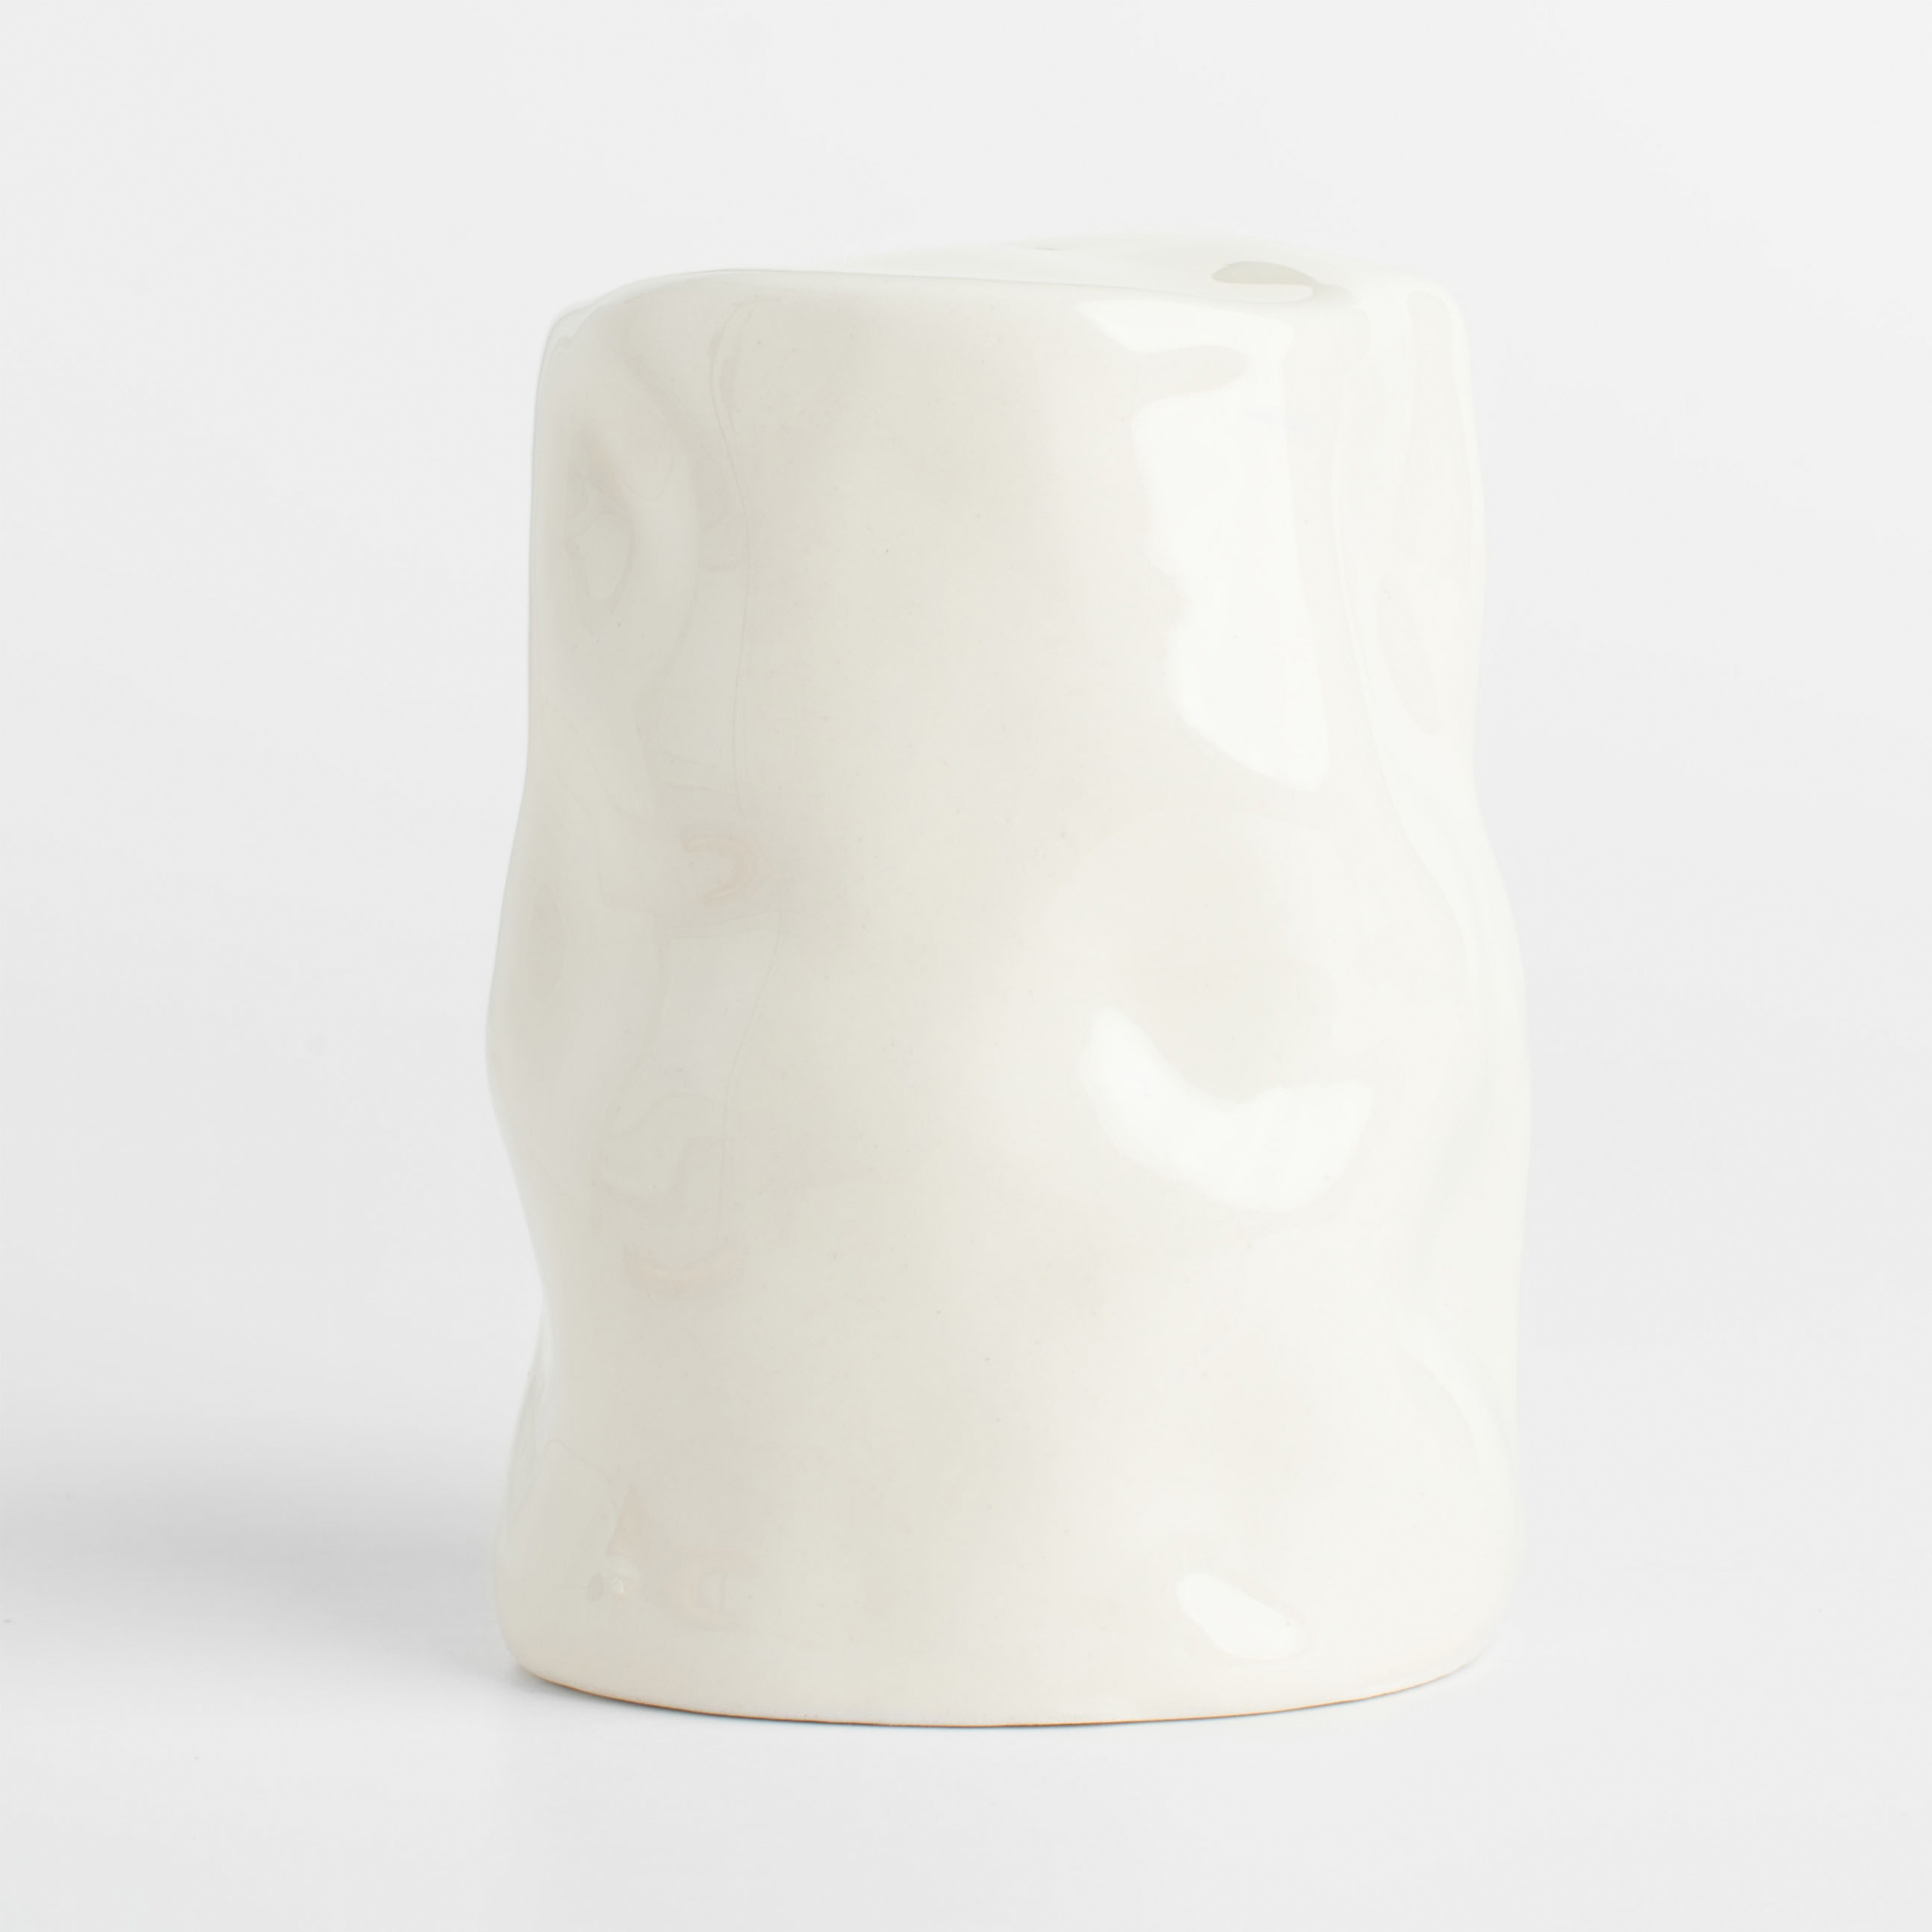 Емкость для соли или перца, 7 см, керамика, молочная, Мятый эффект, Crumple изображение № 3